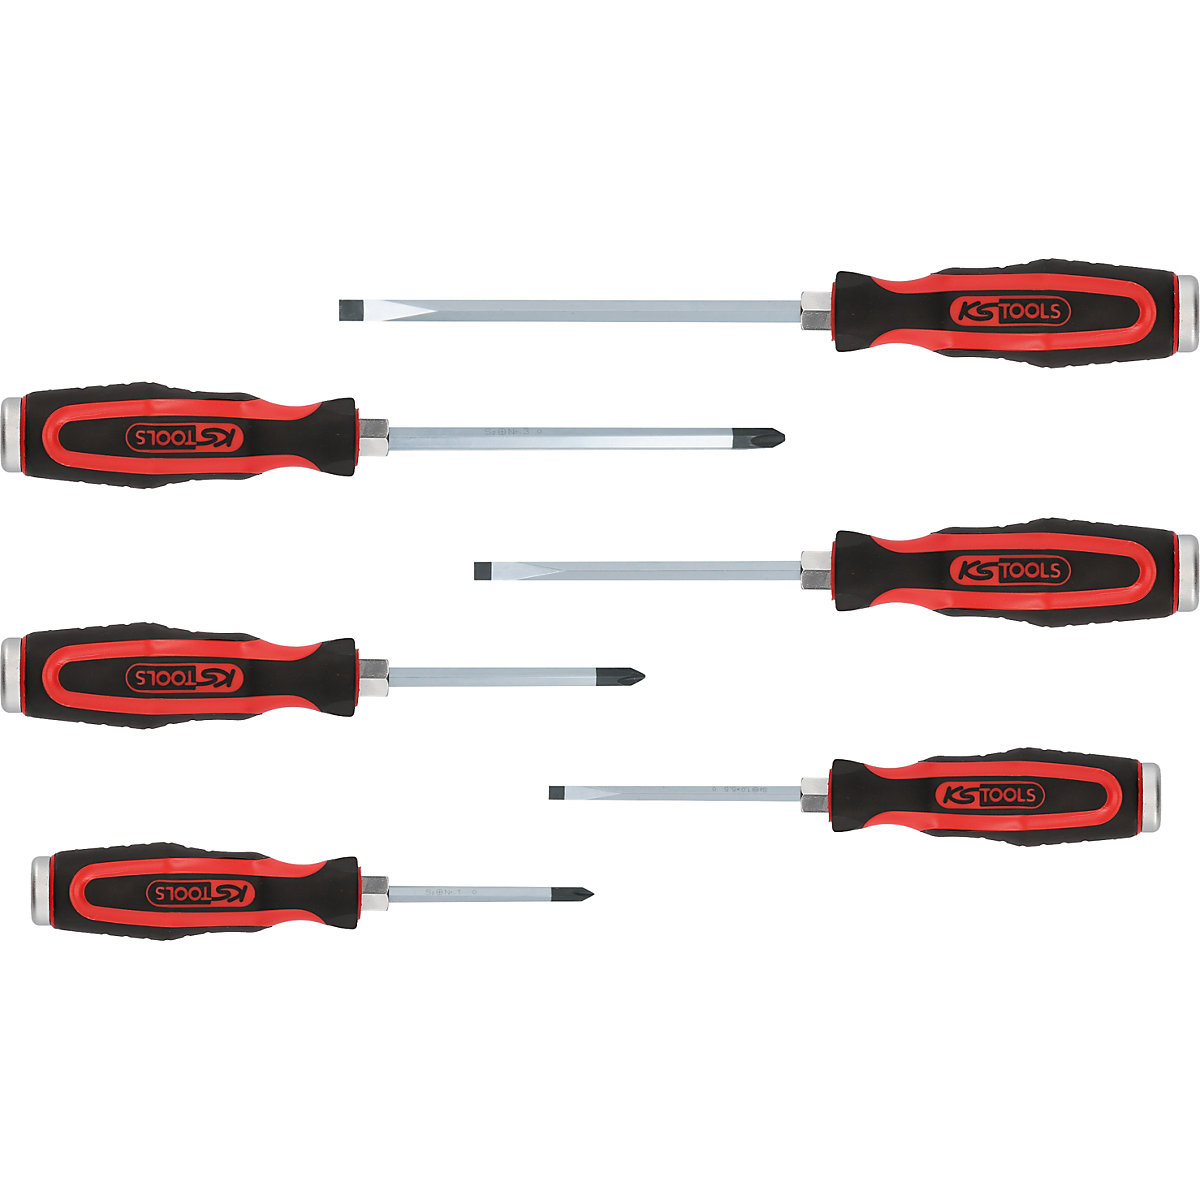 Conjunto de chaves de parafusos com tampa de impacto ERGOTORQUEmax – KS Tools (Imagem do produto 8)-7